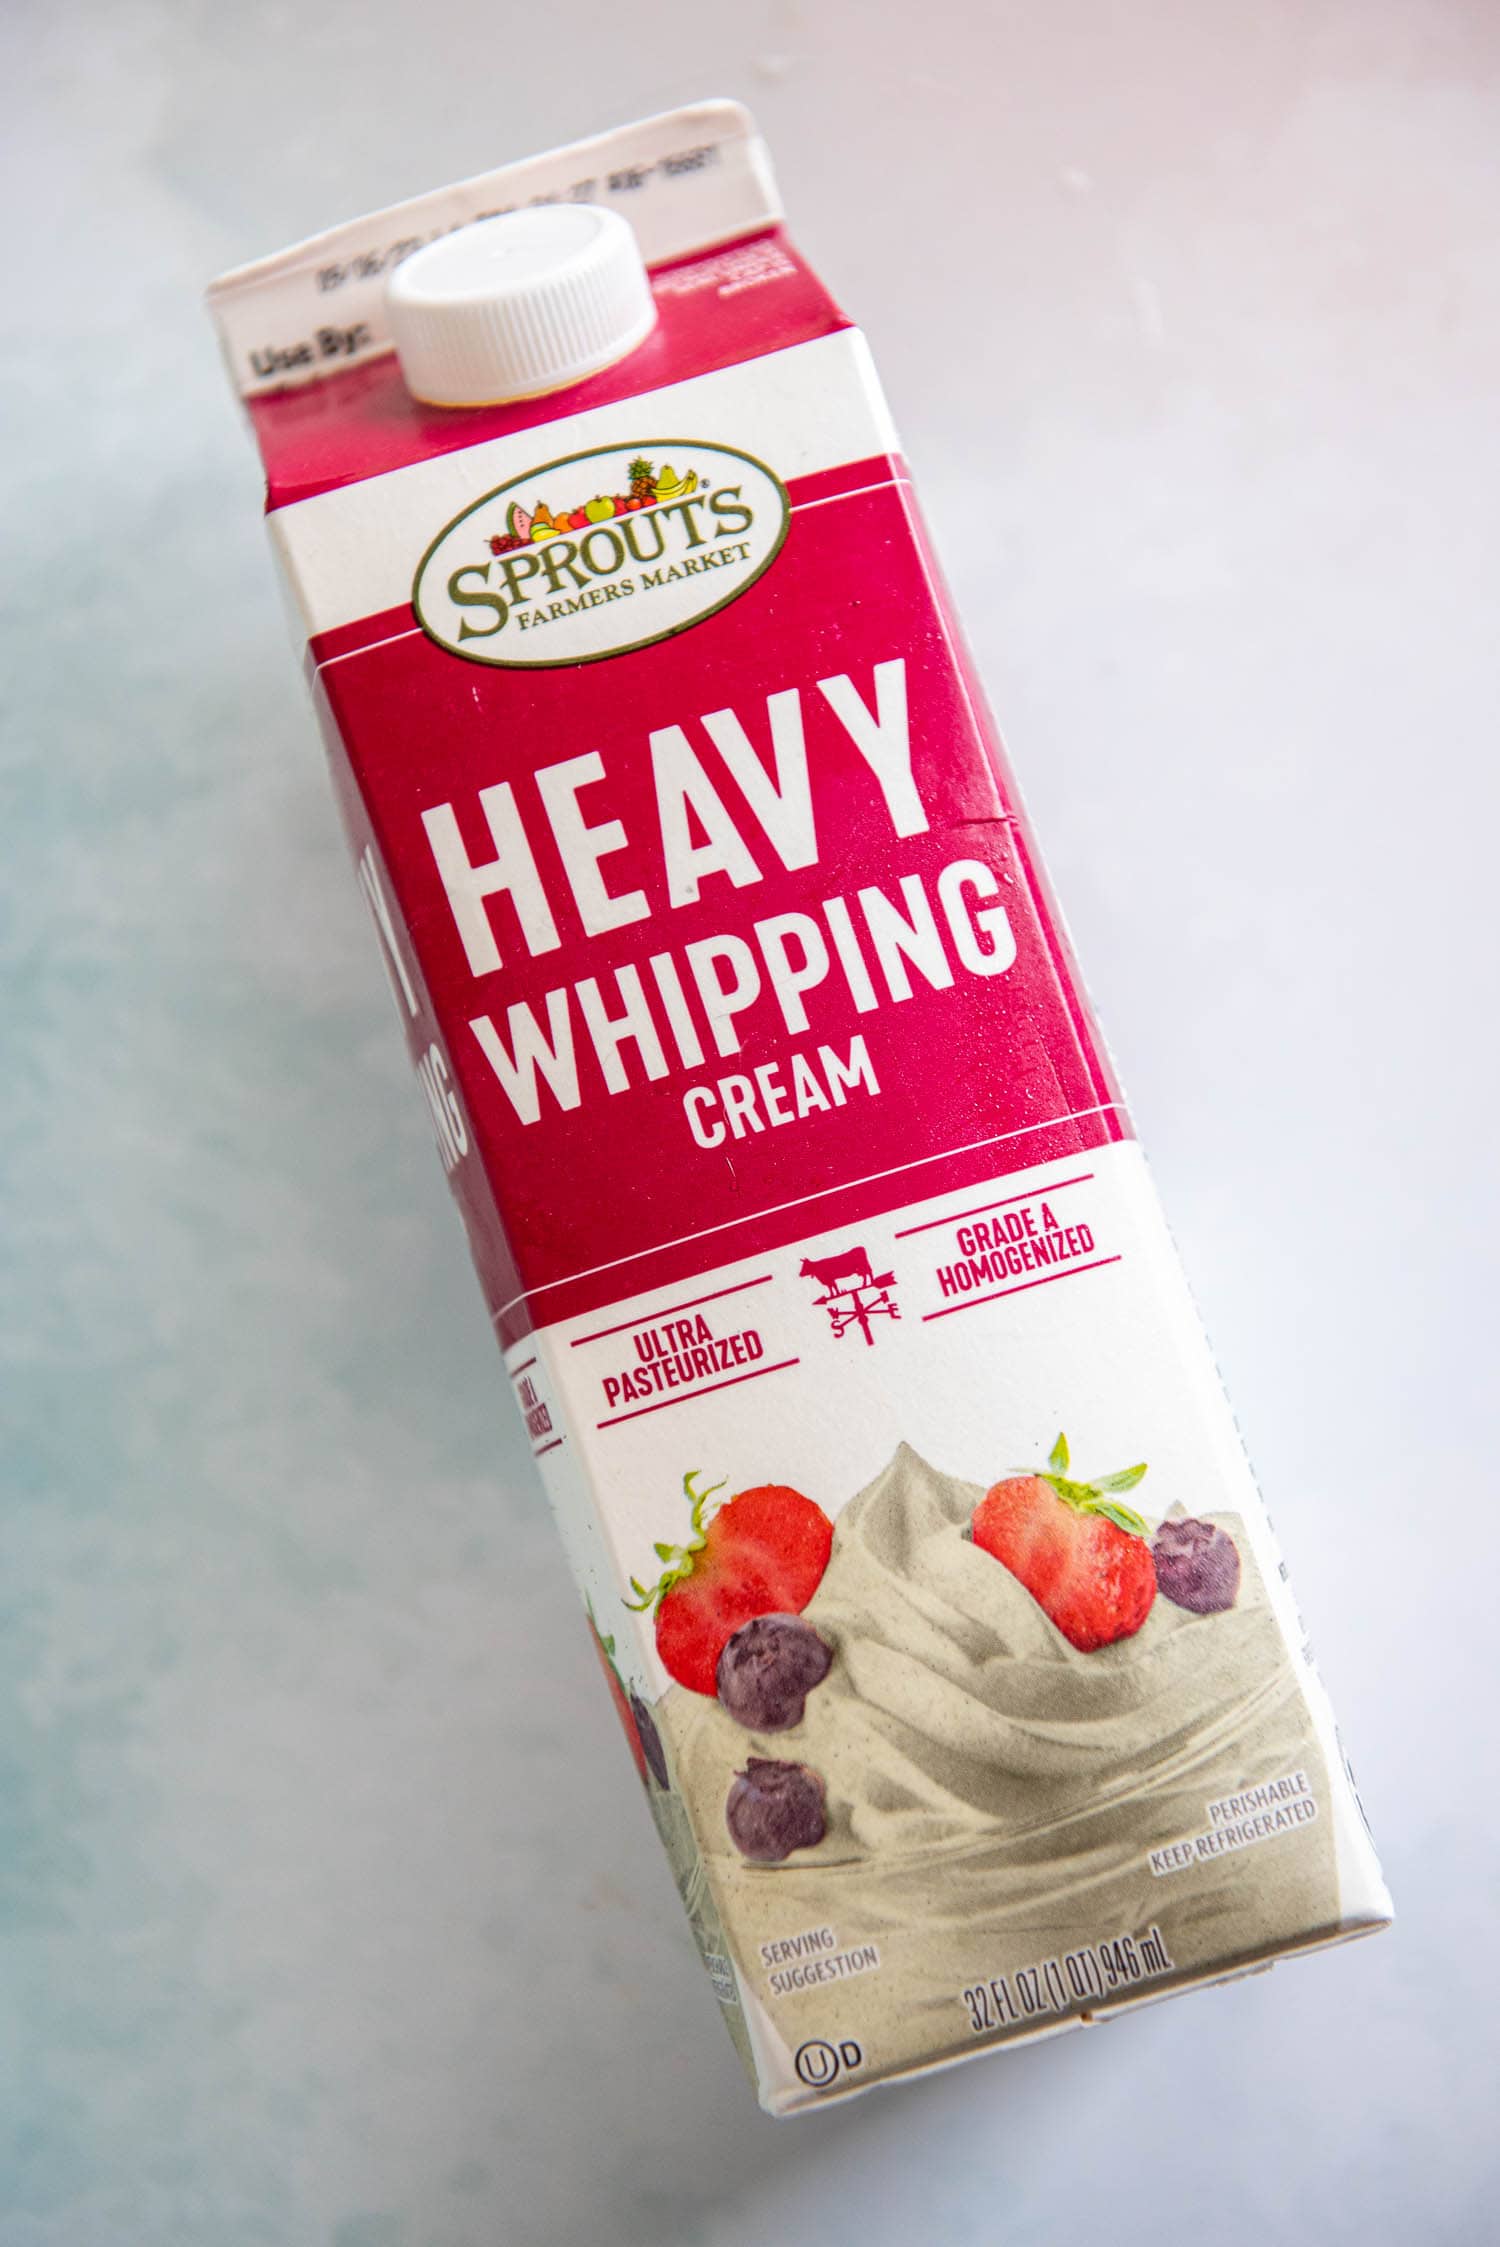 32 fl oz bottle of heavy whipping cream